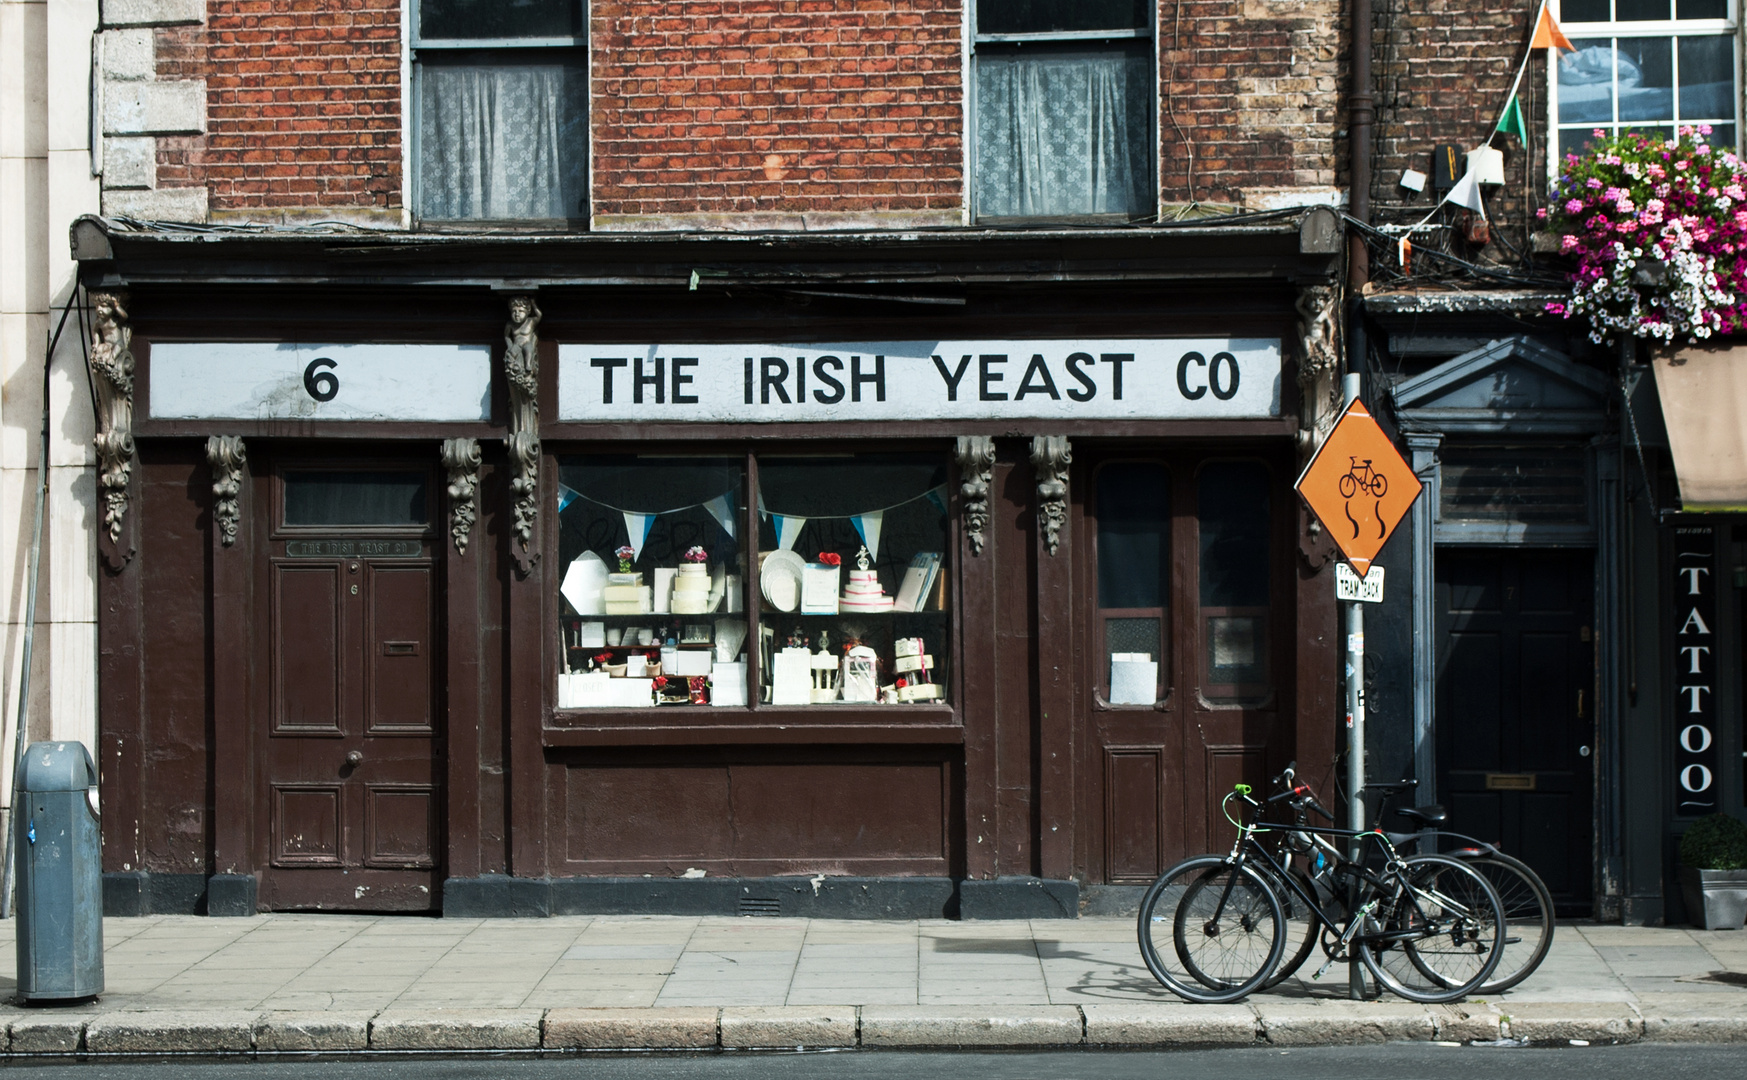 The Irish Yeast